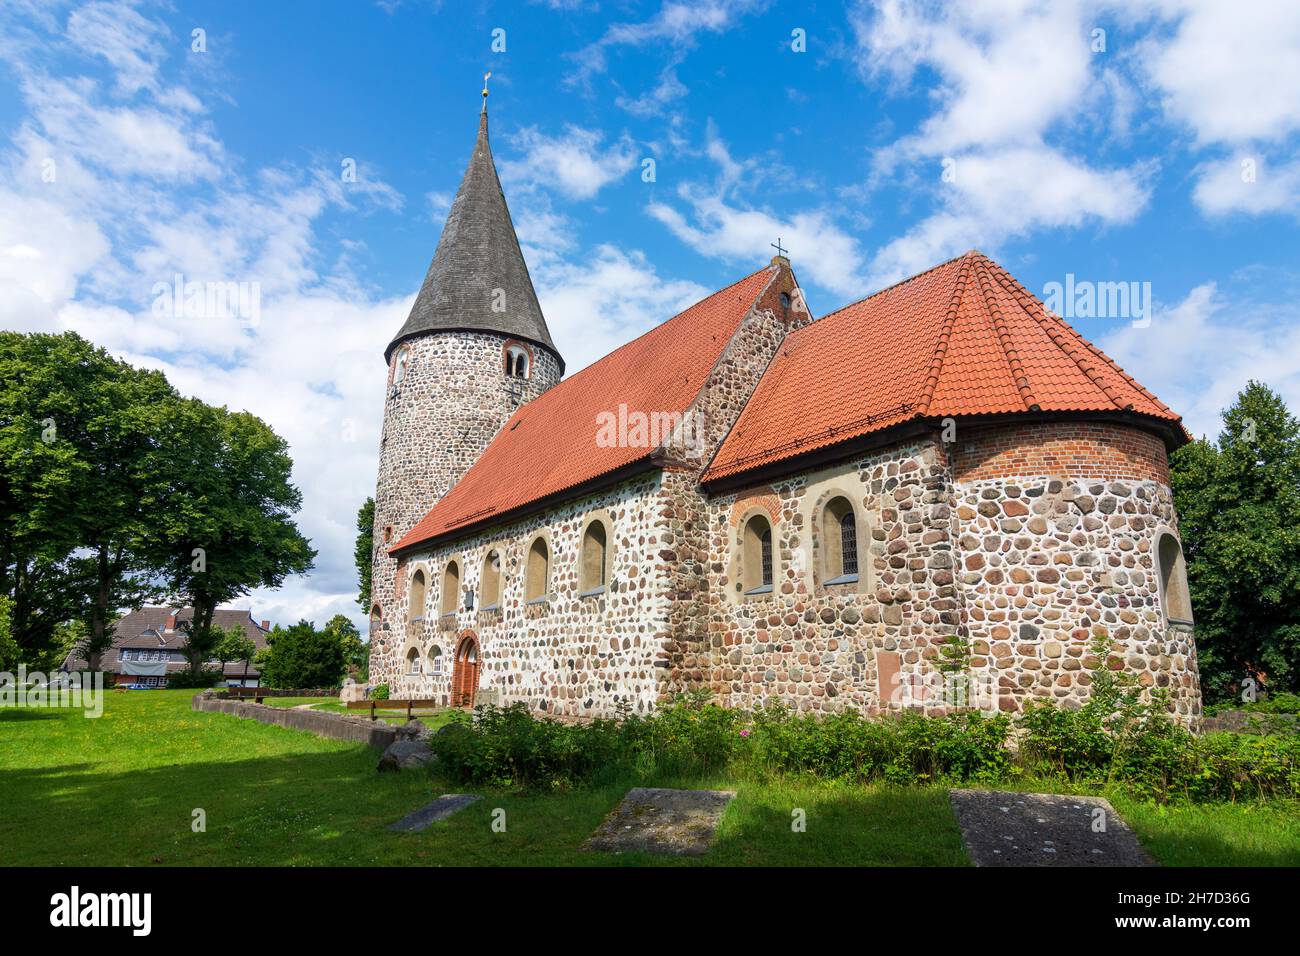 Ratekau : église en pierre de champ de Ratekau à Ostsee (mer Baltique), Schleswig-Holstein, Allemagne Banque D'Images